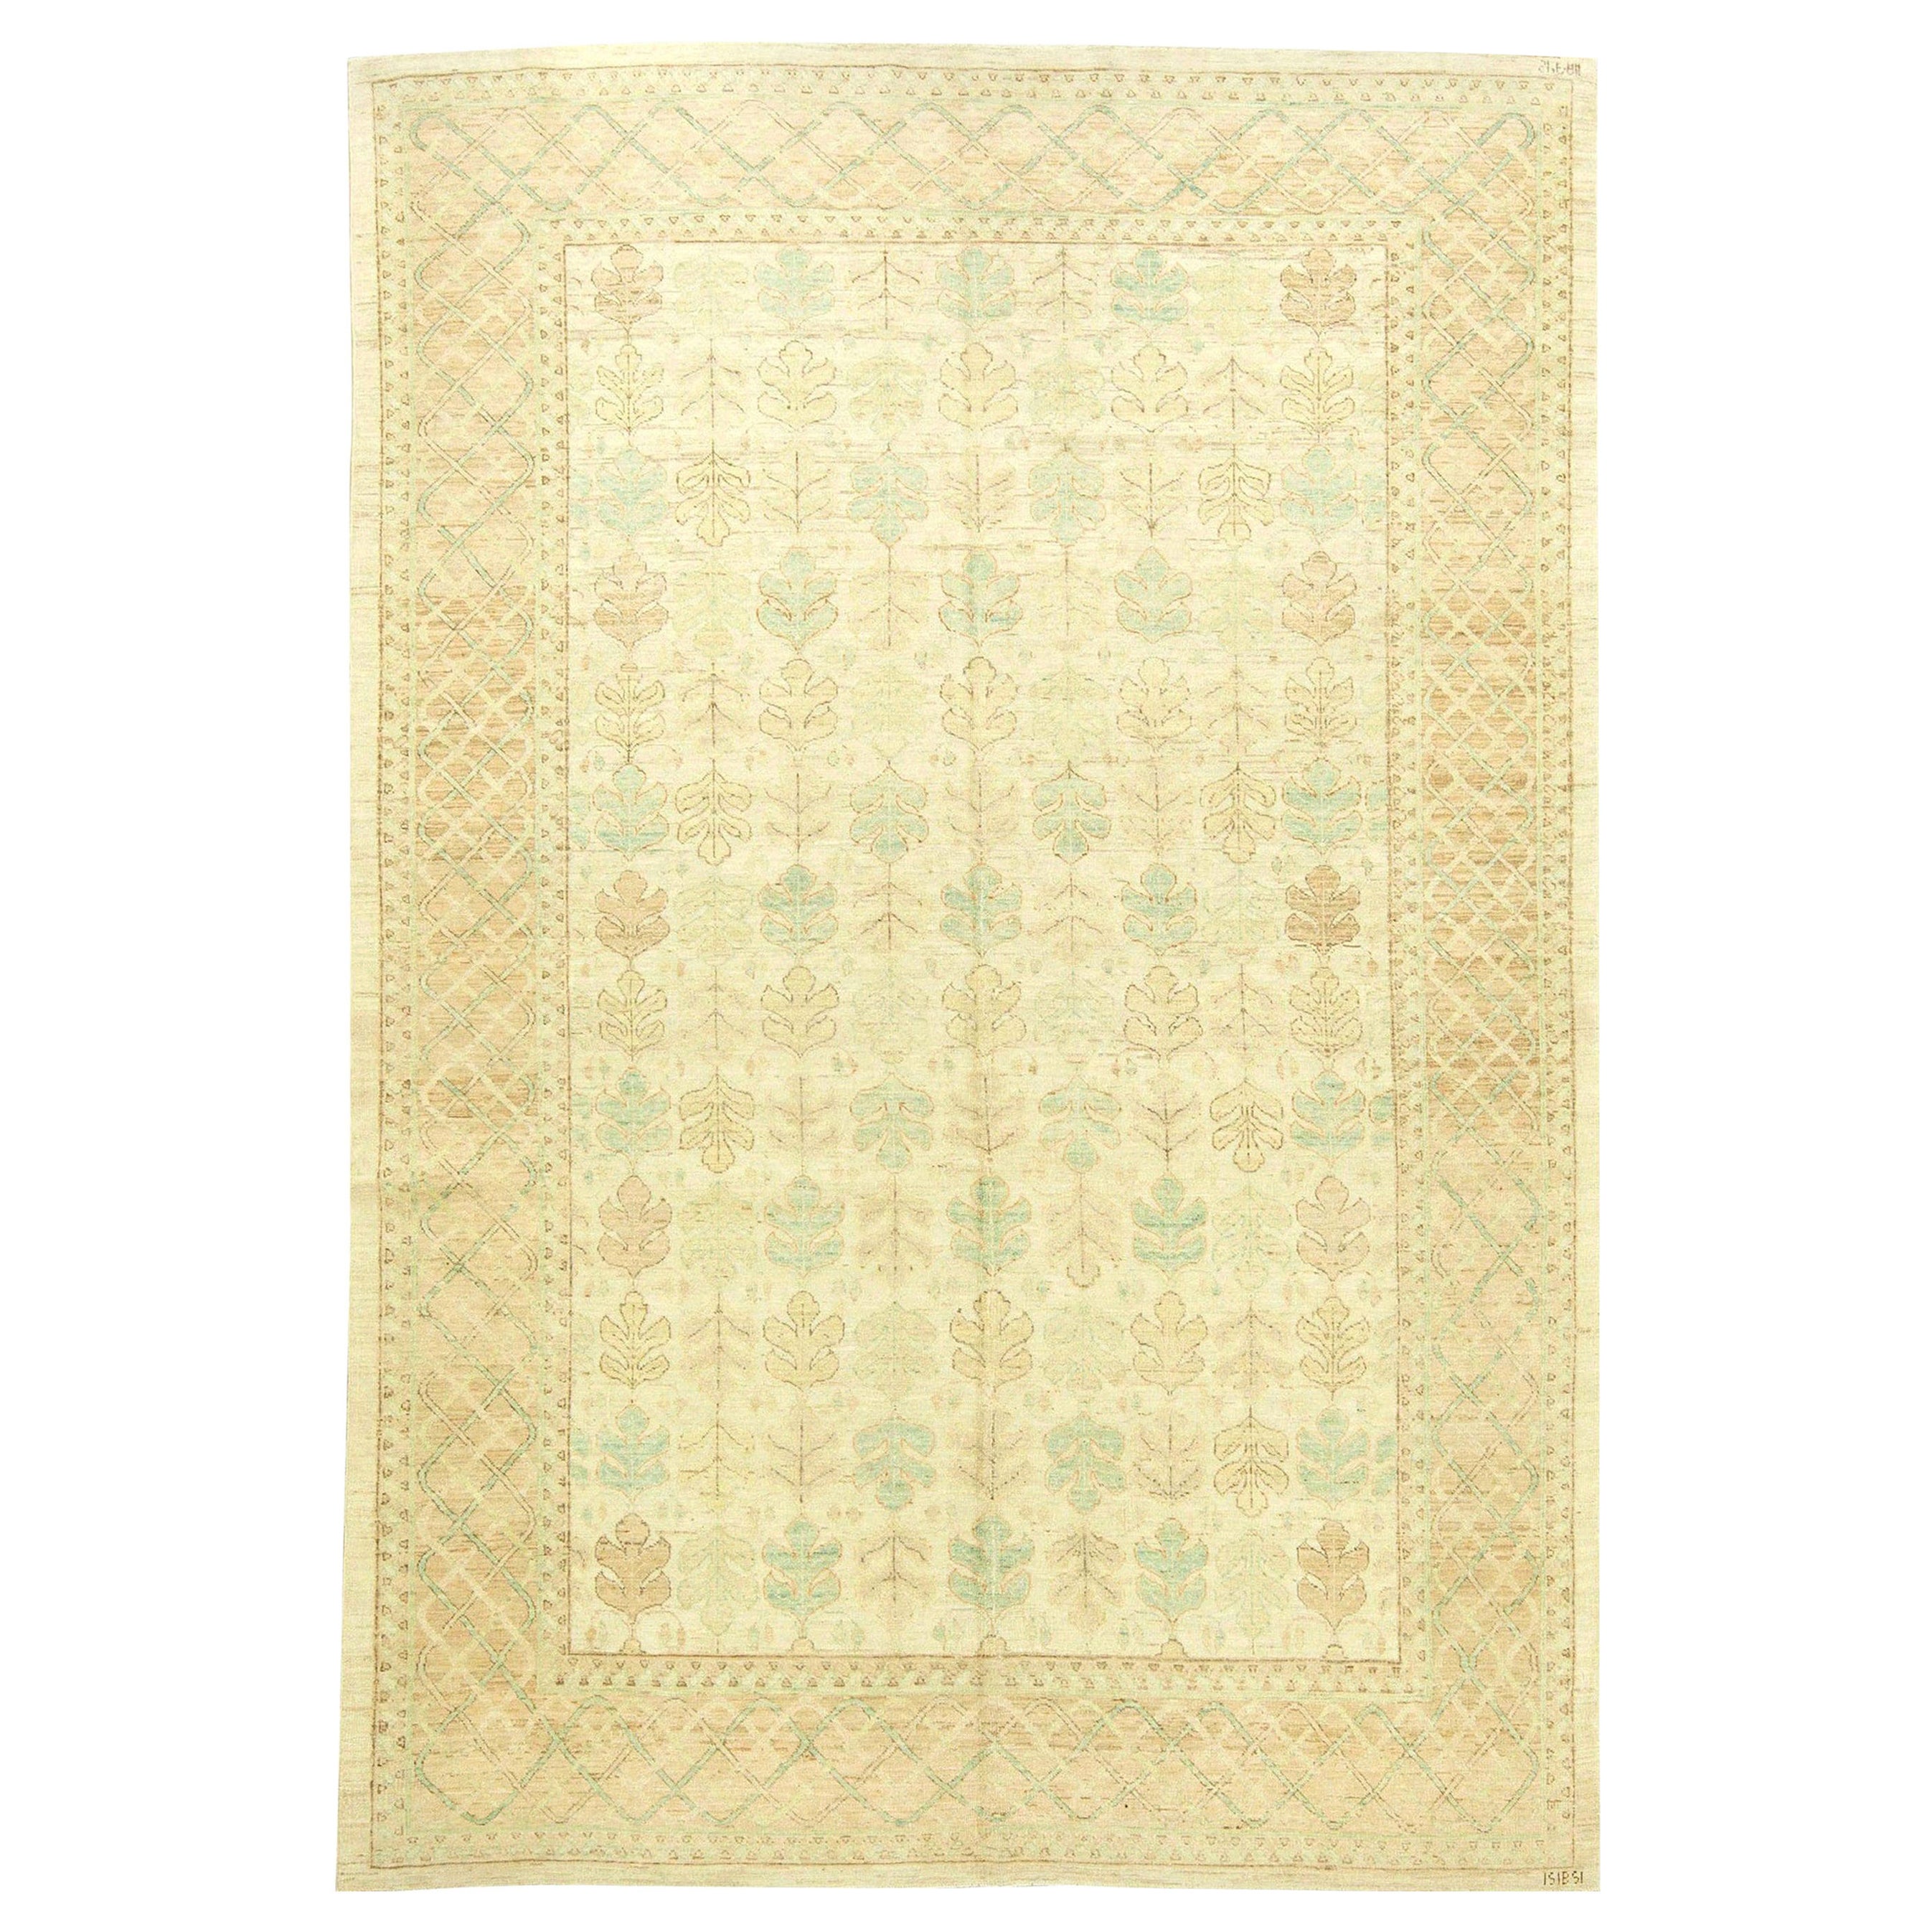 Moderner, traditioneller, orientalisch inspirierter handgefertigter Teppich von Doris Leslie Blau